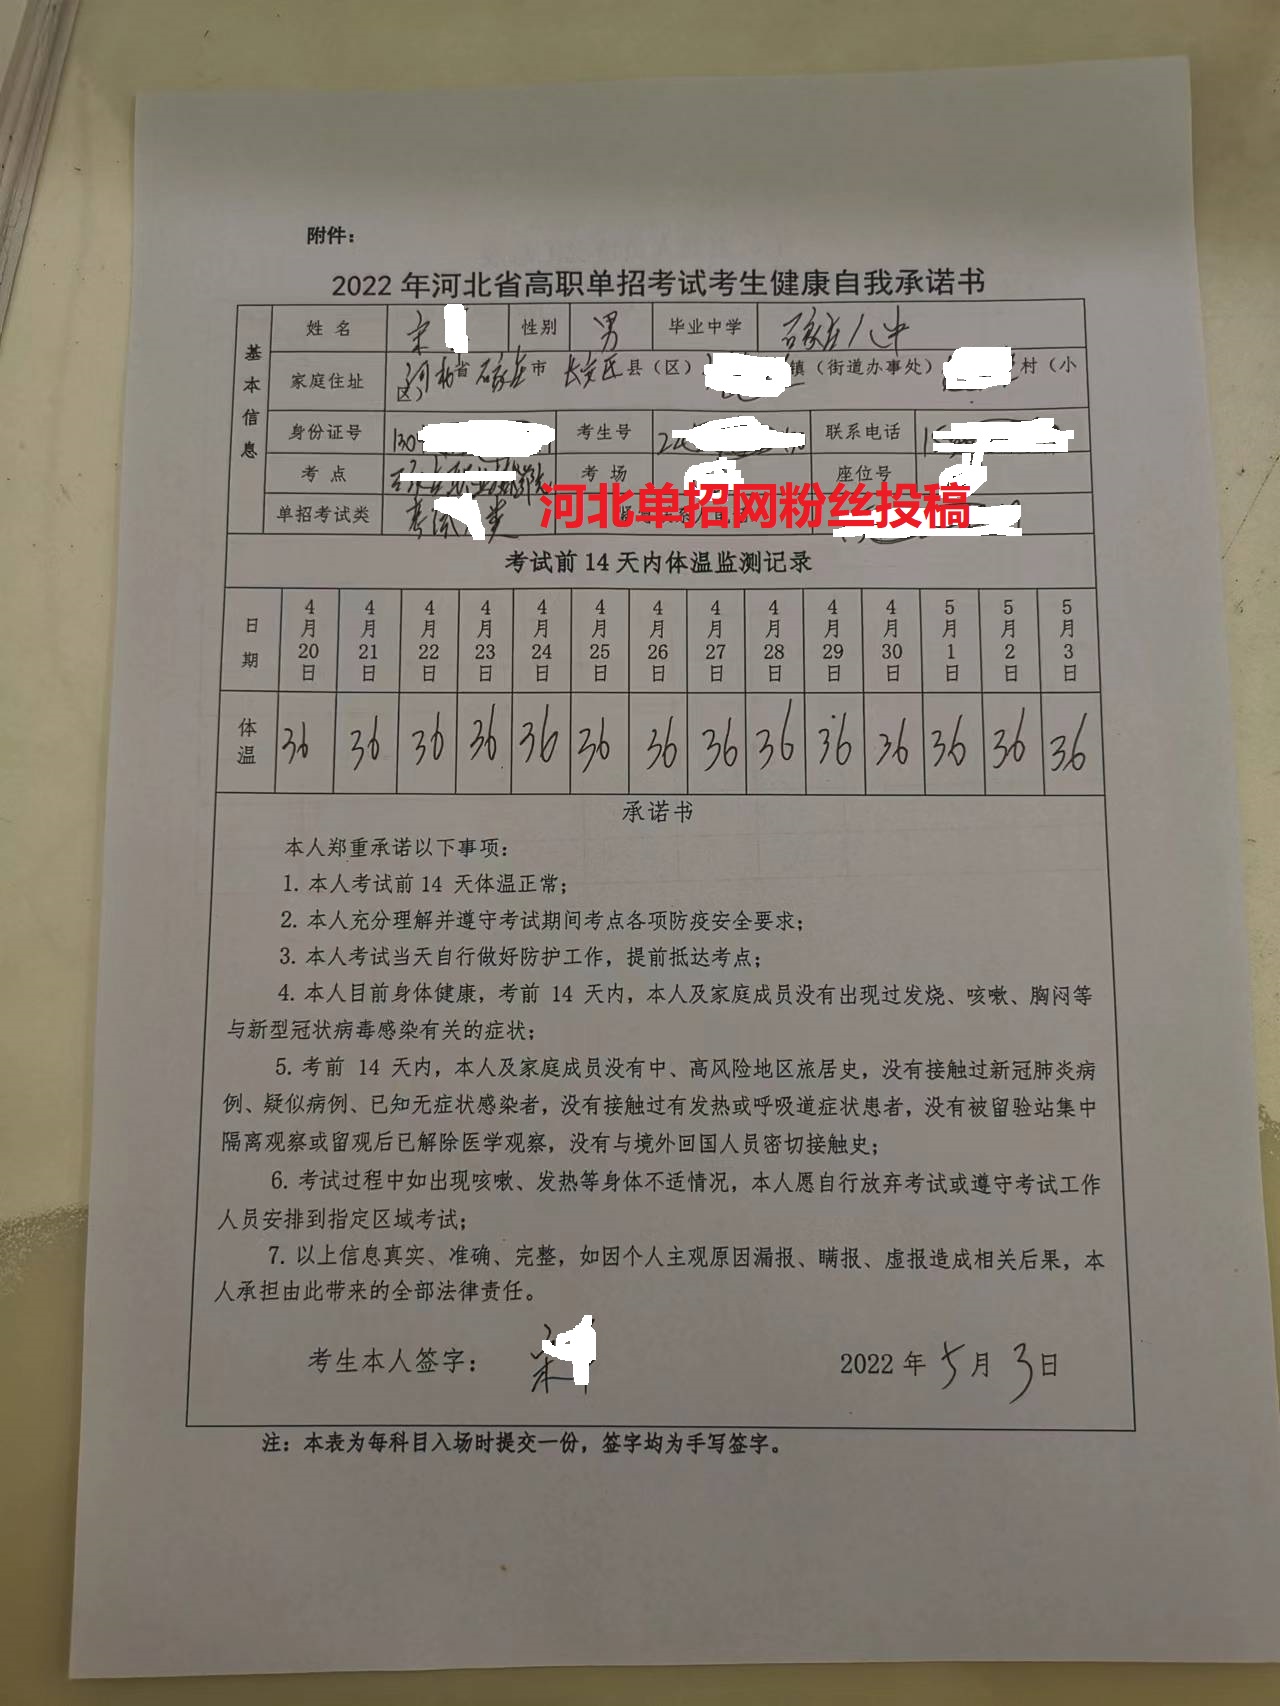 2022年河北省高职单招准考证打印流程图 图5